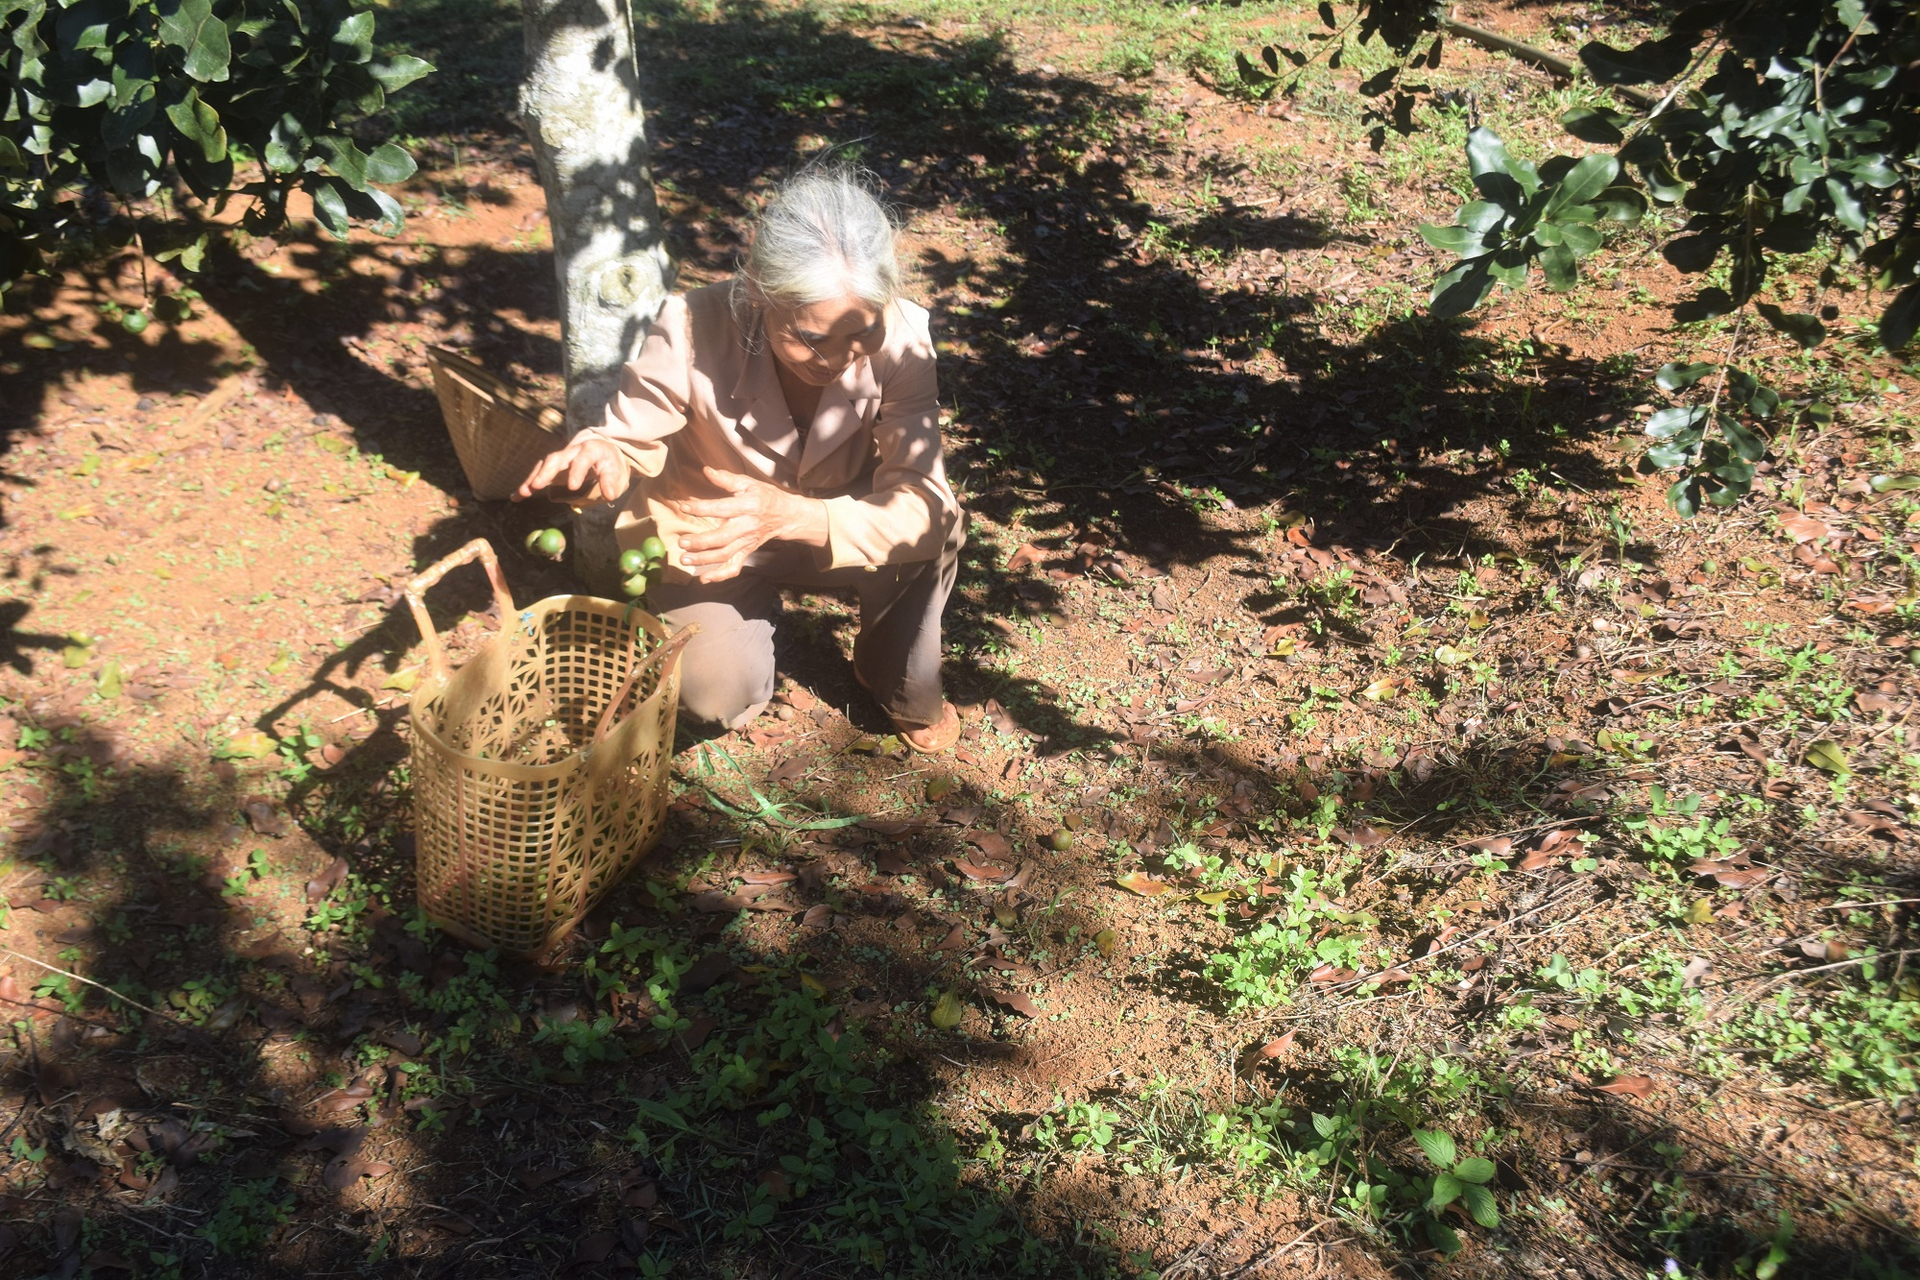 Bà Võ Thị Thu, vợ ông Khánh dạo vườn mắc ca lượm những quả chín sớm rụng xuống đất để bán. Ảnh: VĐT.